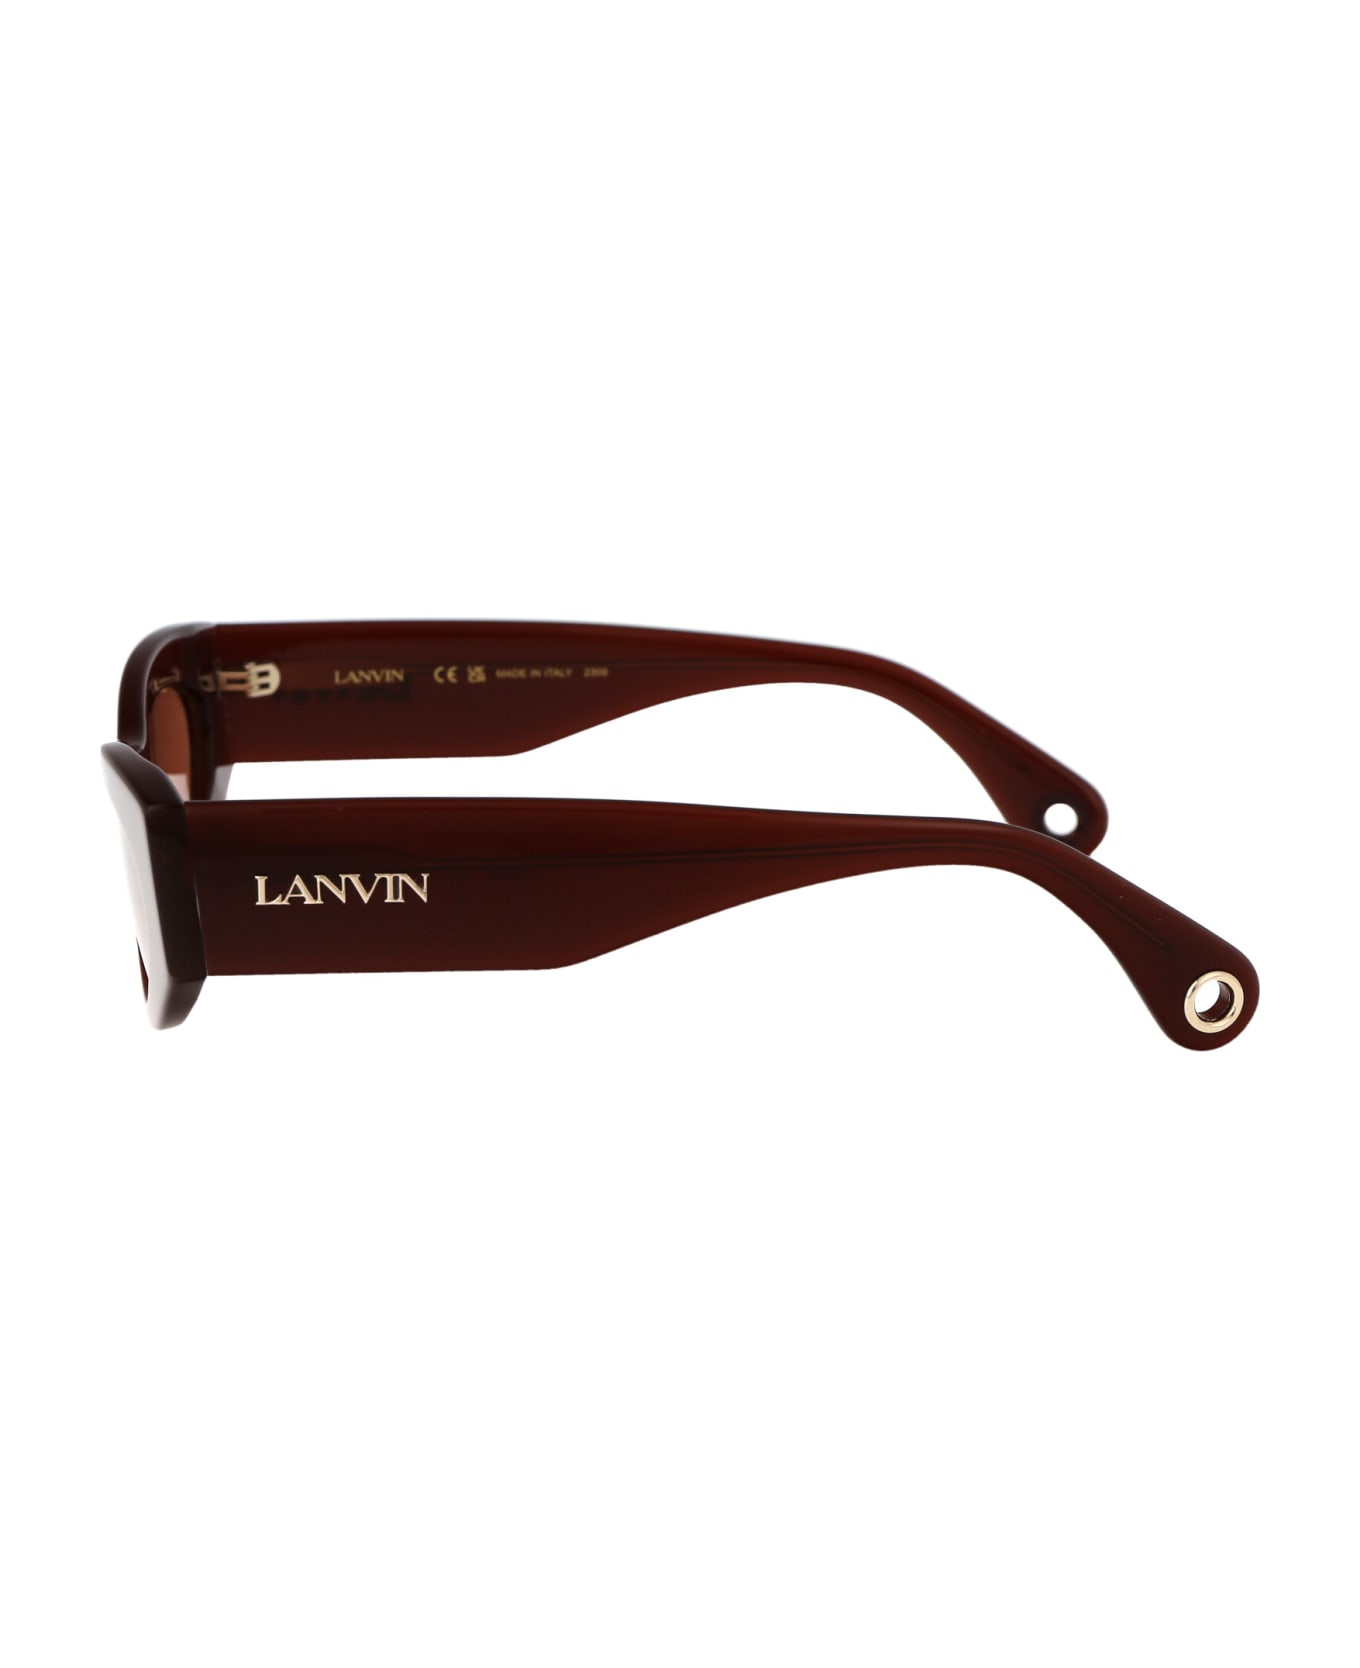 Lanvin Lnv669s Sunglasses - 235 RED